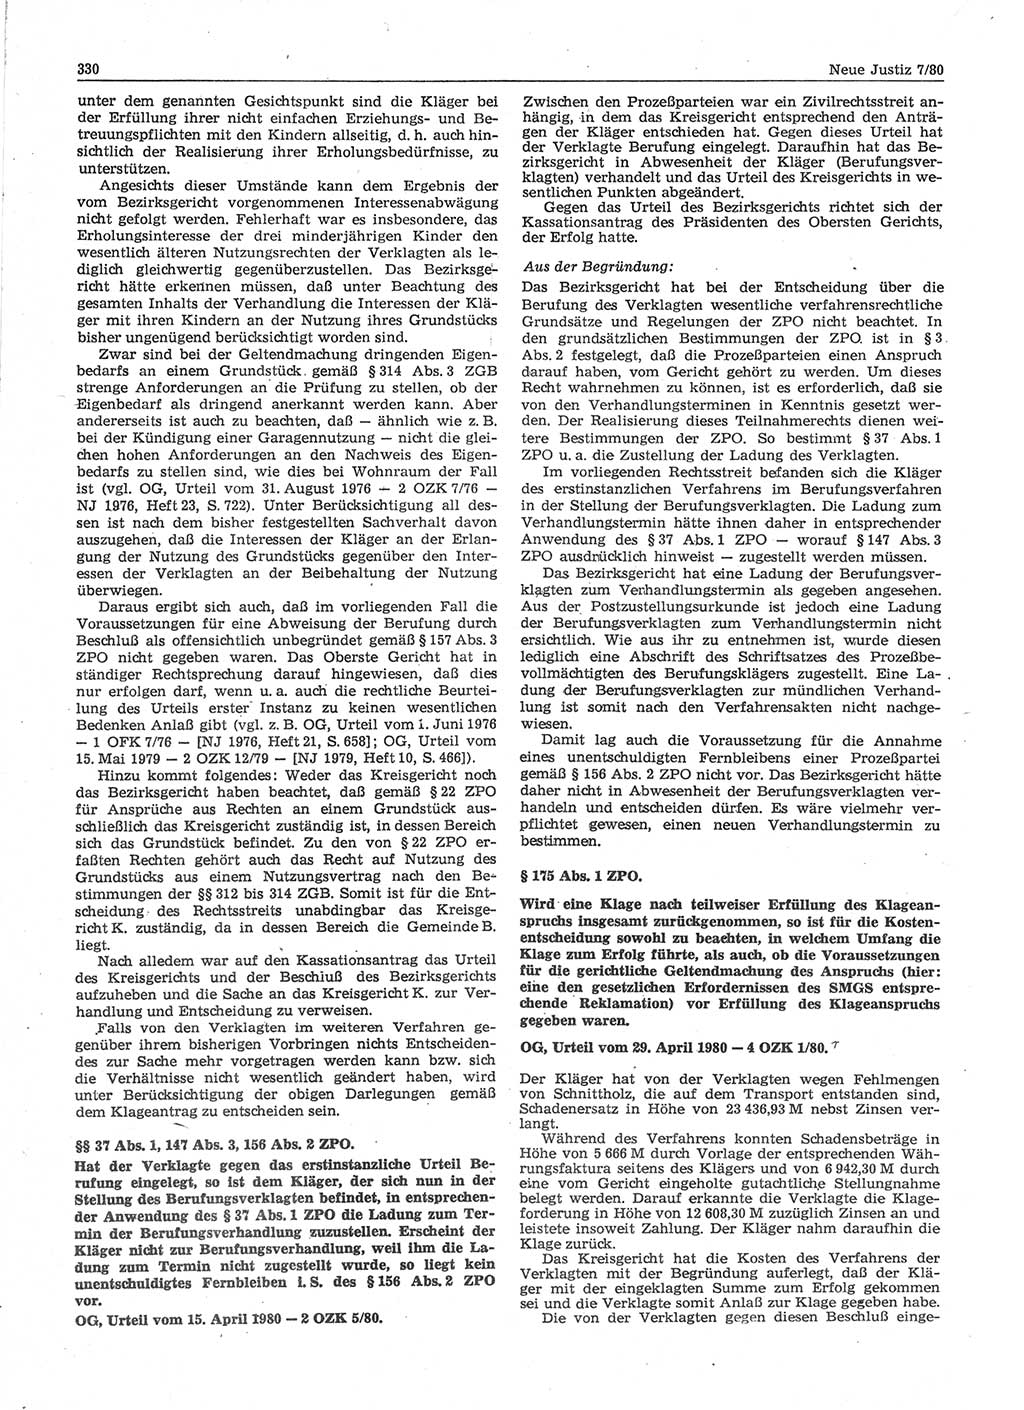 Neue Justiz (NJ), Zeitschrift für sozialistisches Recht und Gesetzlichkeit [Deutsche Demokratische Republik (DDR)], 34. Jahrgang 1980, Seite 330 (NJ DDR 1980, S. 330)